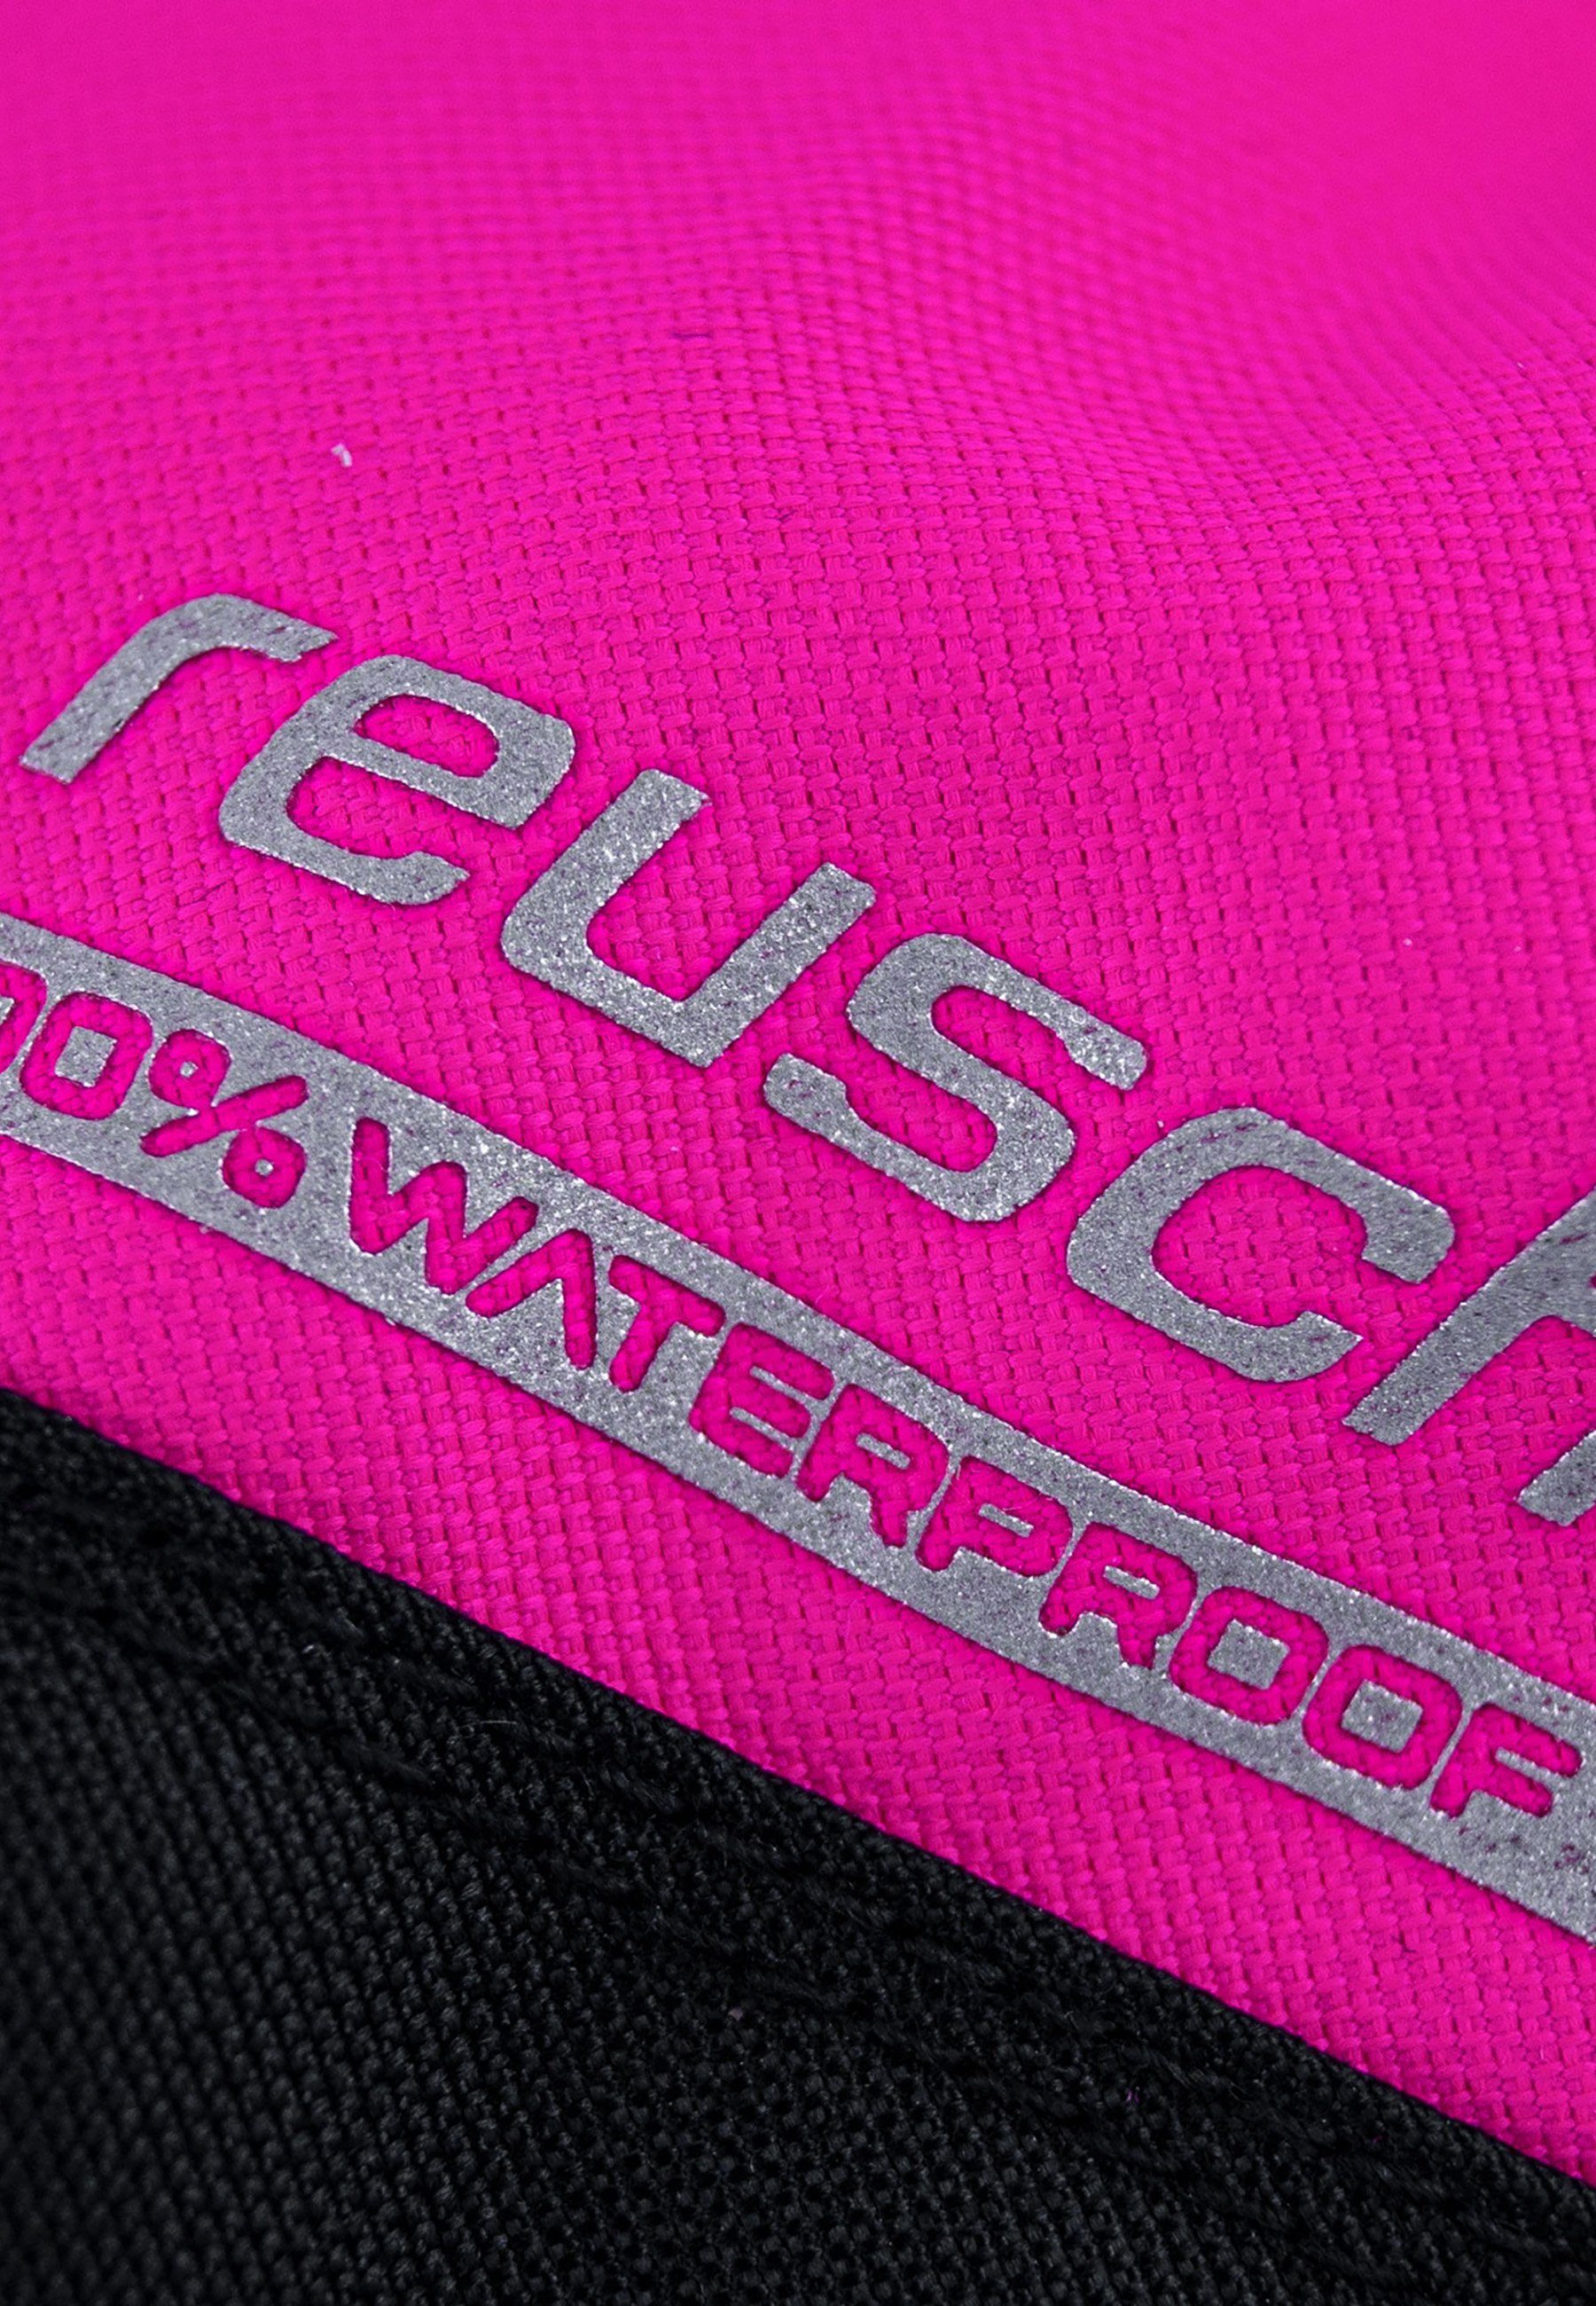 Reusch Fäustlinge Wes pink-schwarz warm, XT R-TEX wasserdicht, atmungsaktiv Mitten sehr